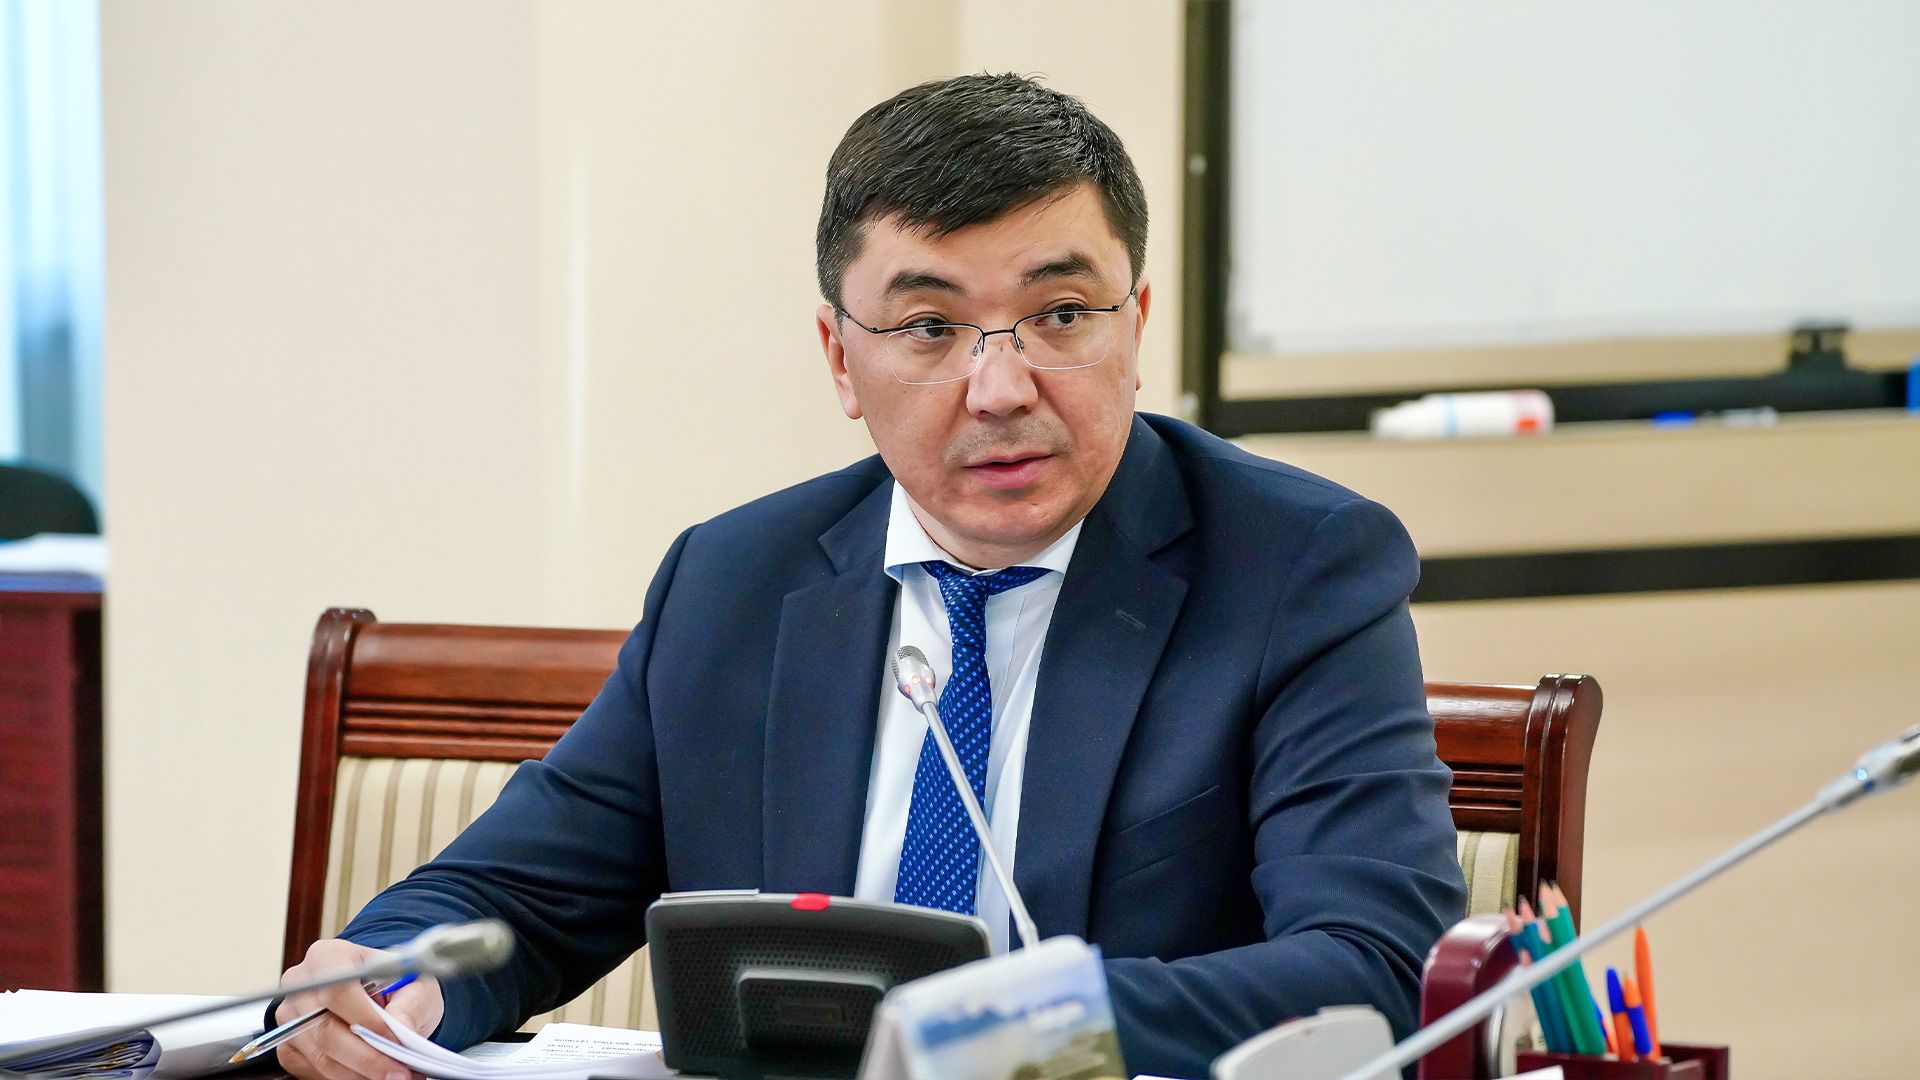 Подписано Генеральное соглашение по улучшению условий труда в Казахстане 2822568 — Kapital.kz 